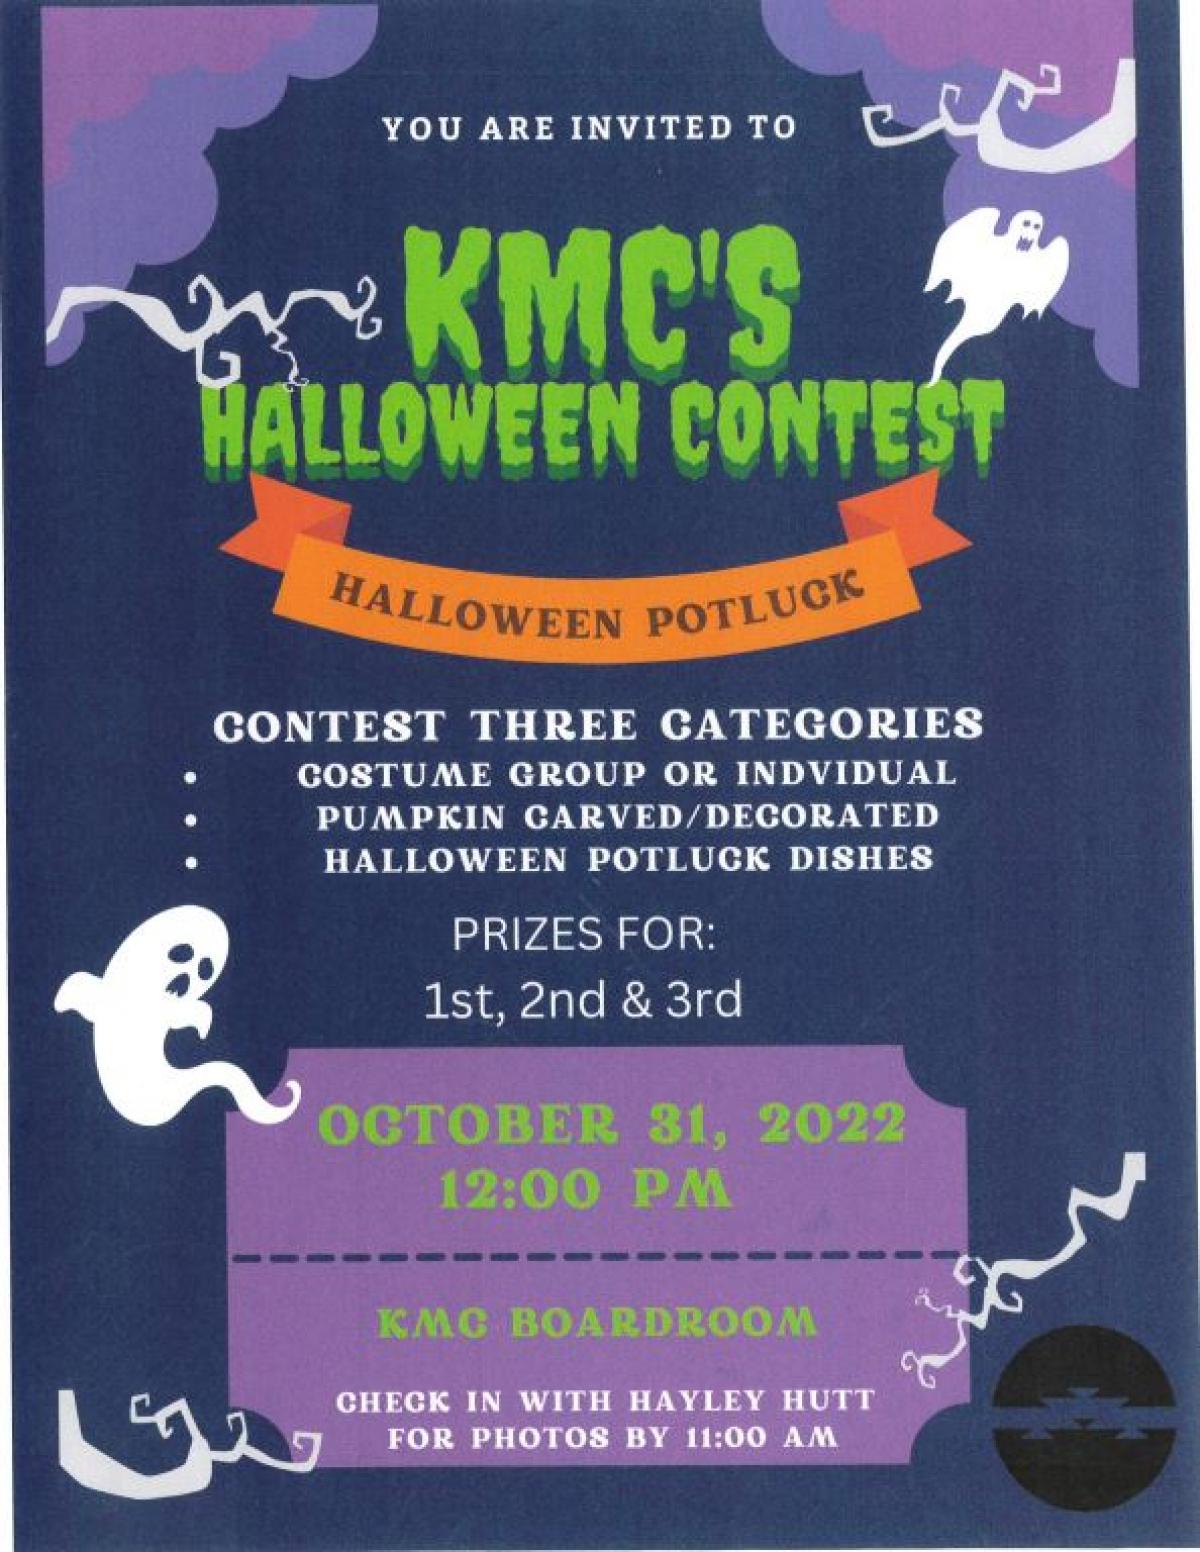 KMC Halloween Contest